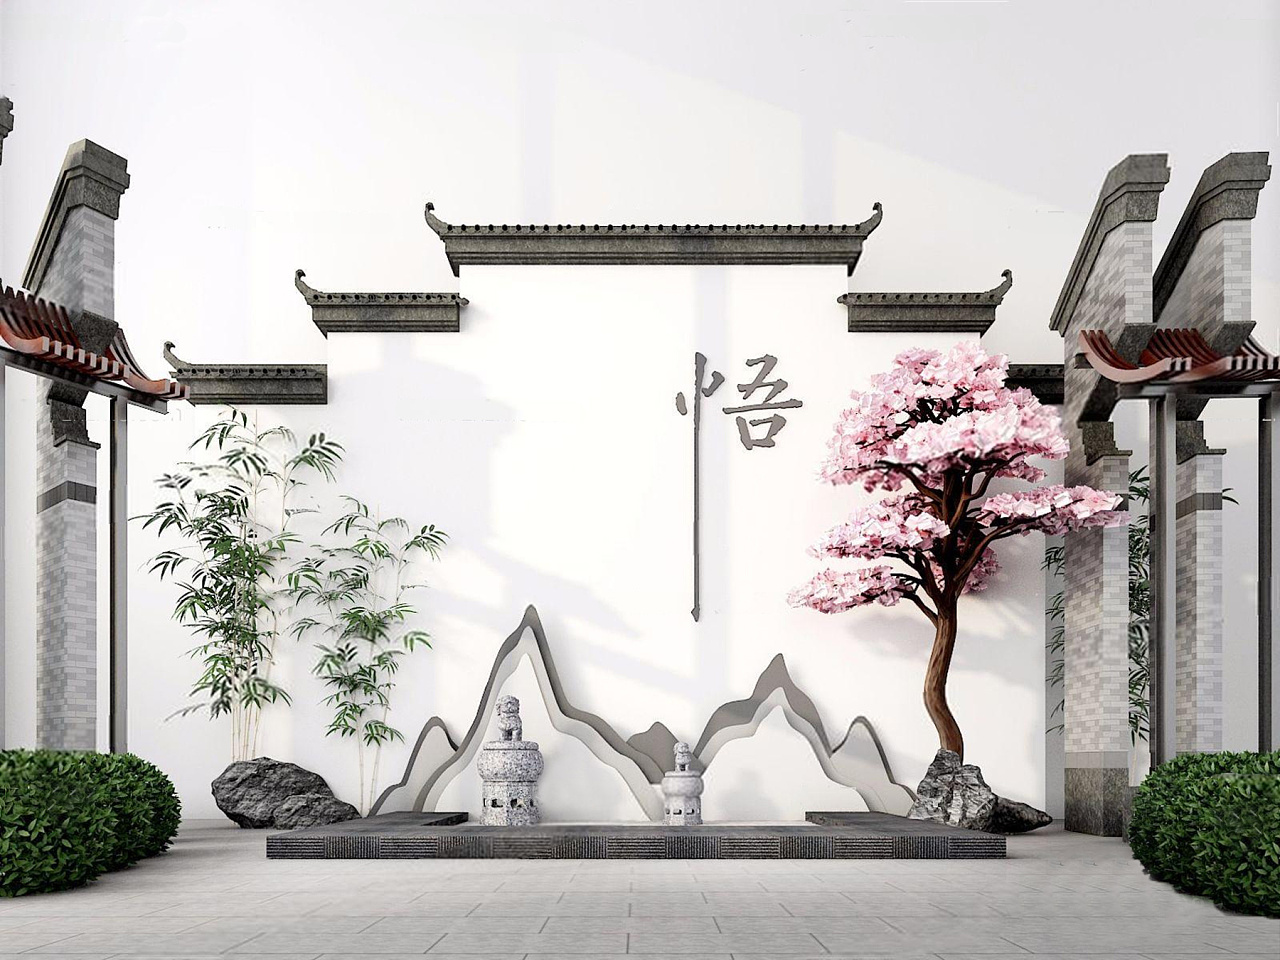 中式徽派别墅精细建筑模型Lumion渲染su模型下载-光辉城市